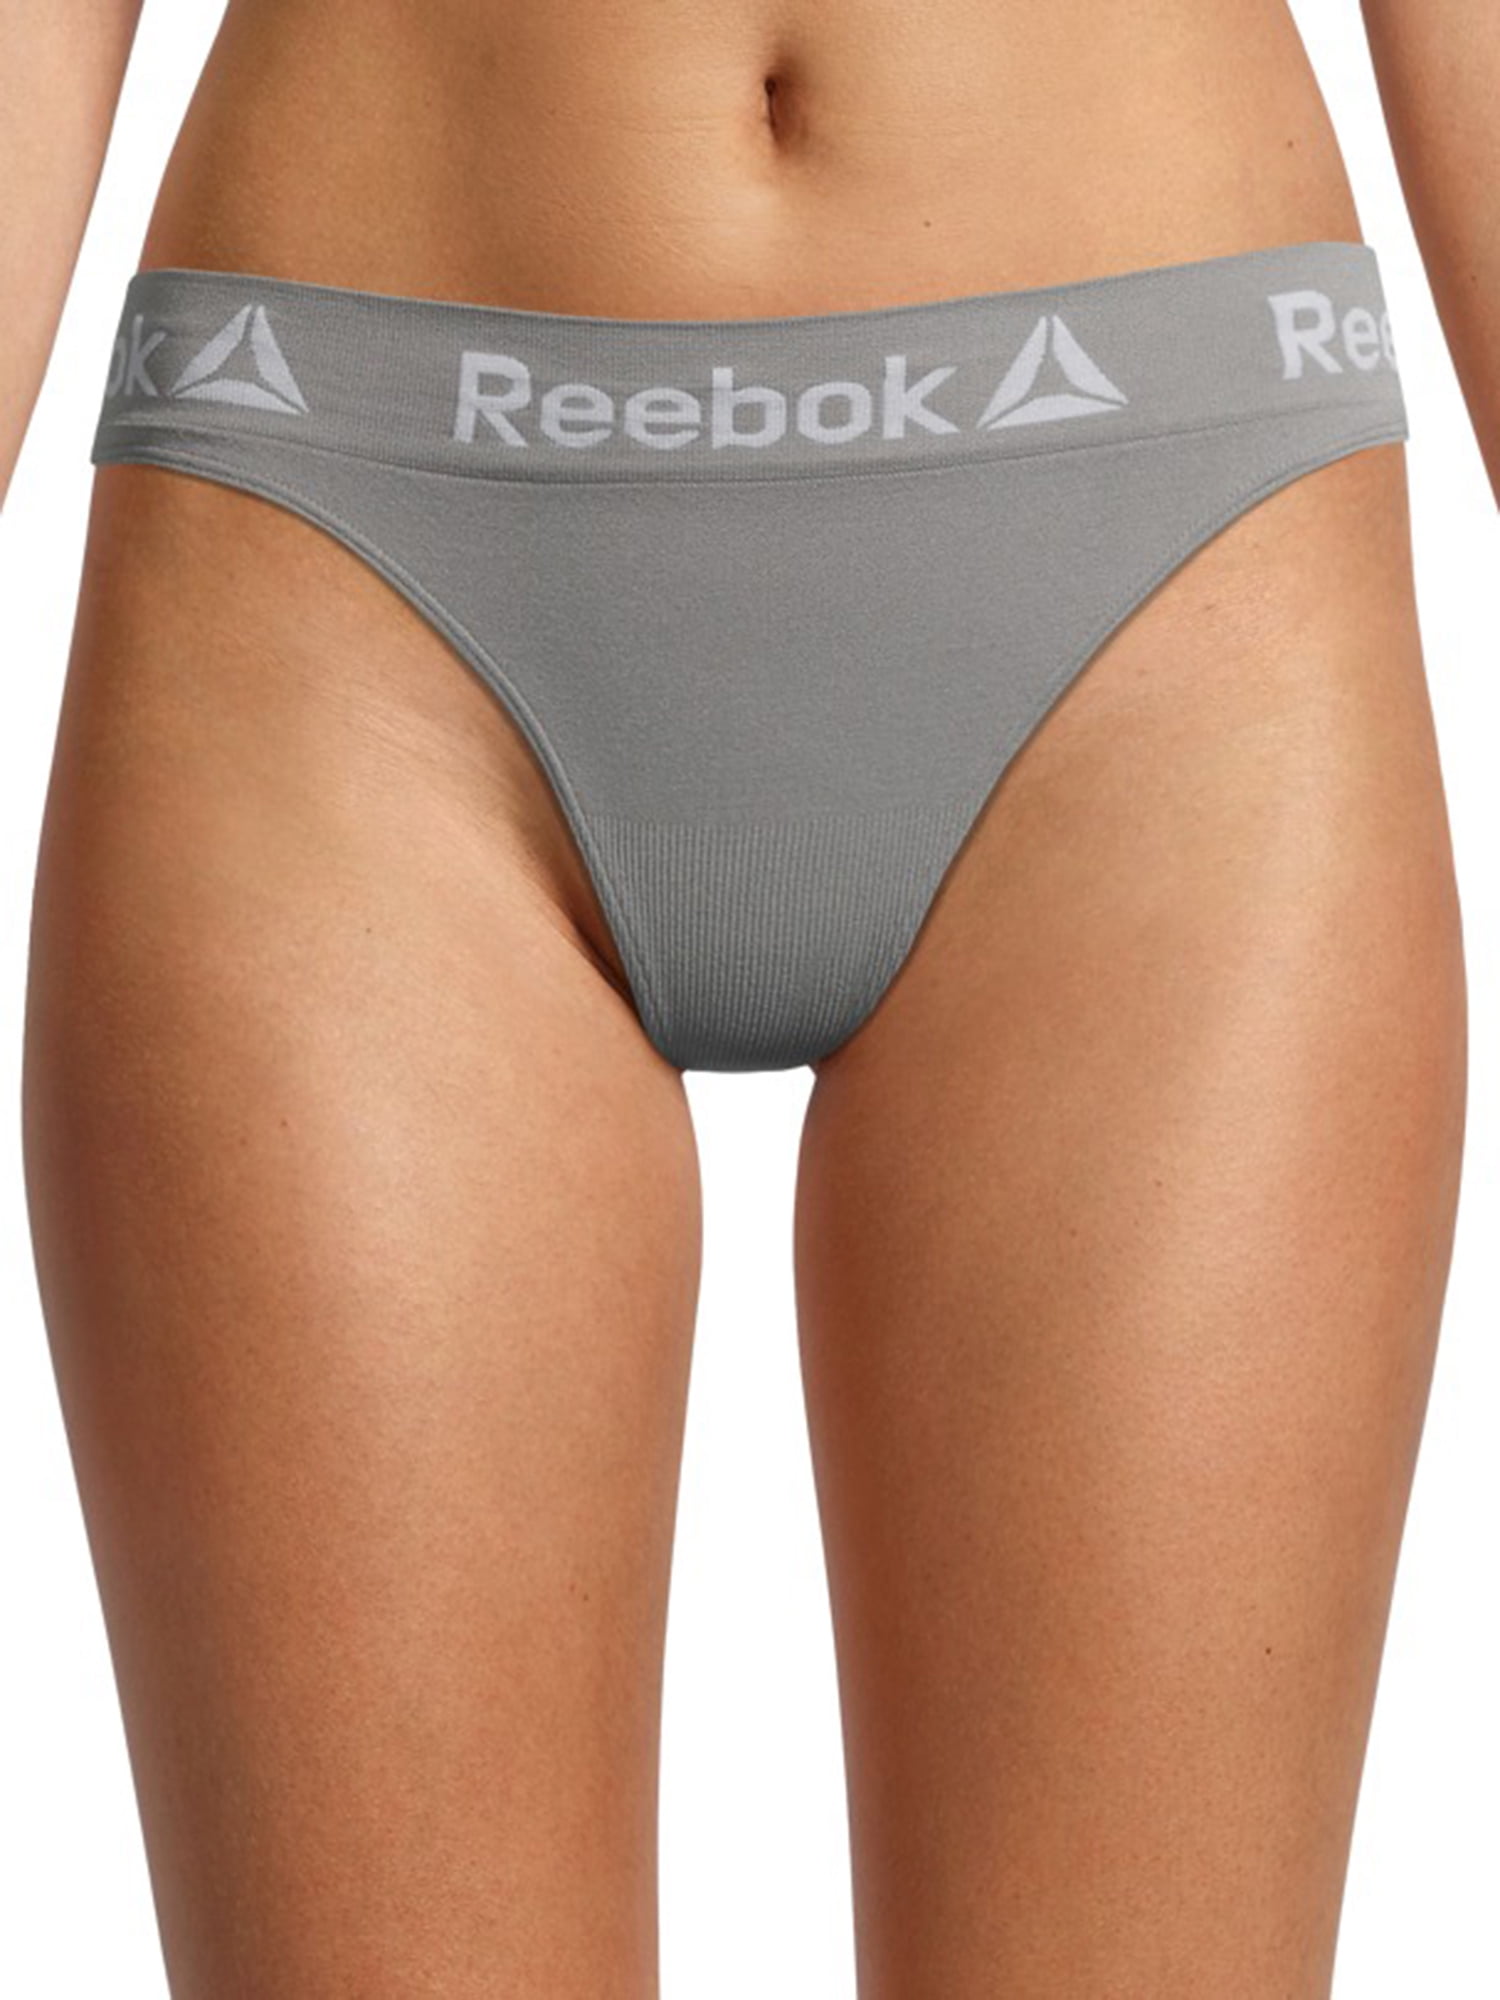 Reebok Women's Seamless Thong Panties, 4-Pack 